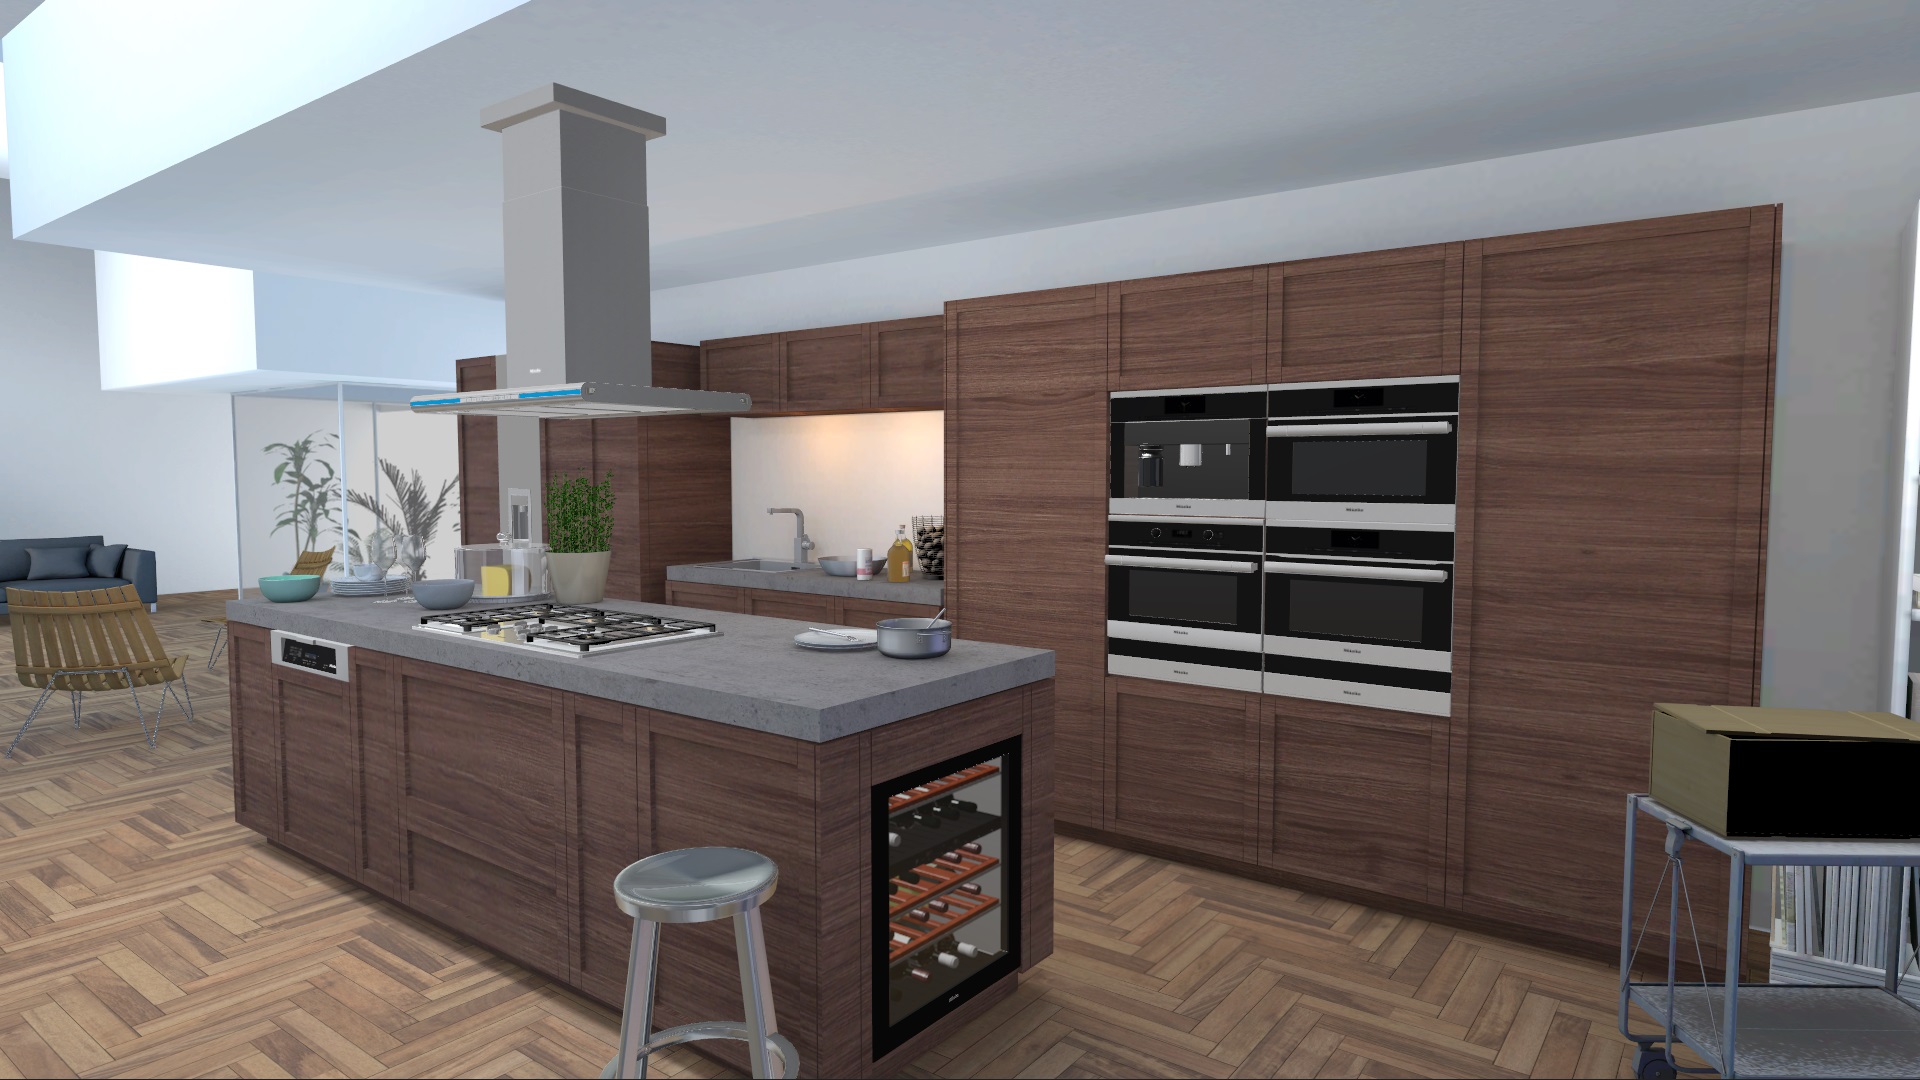 miele kitchen appliance visualizer kueche mit parkettboden